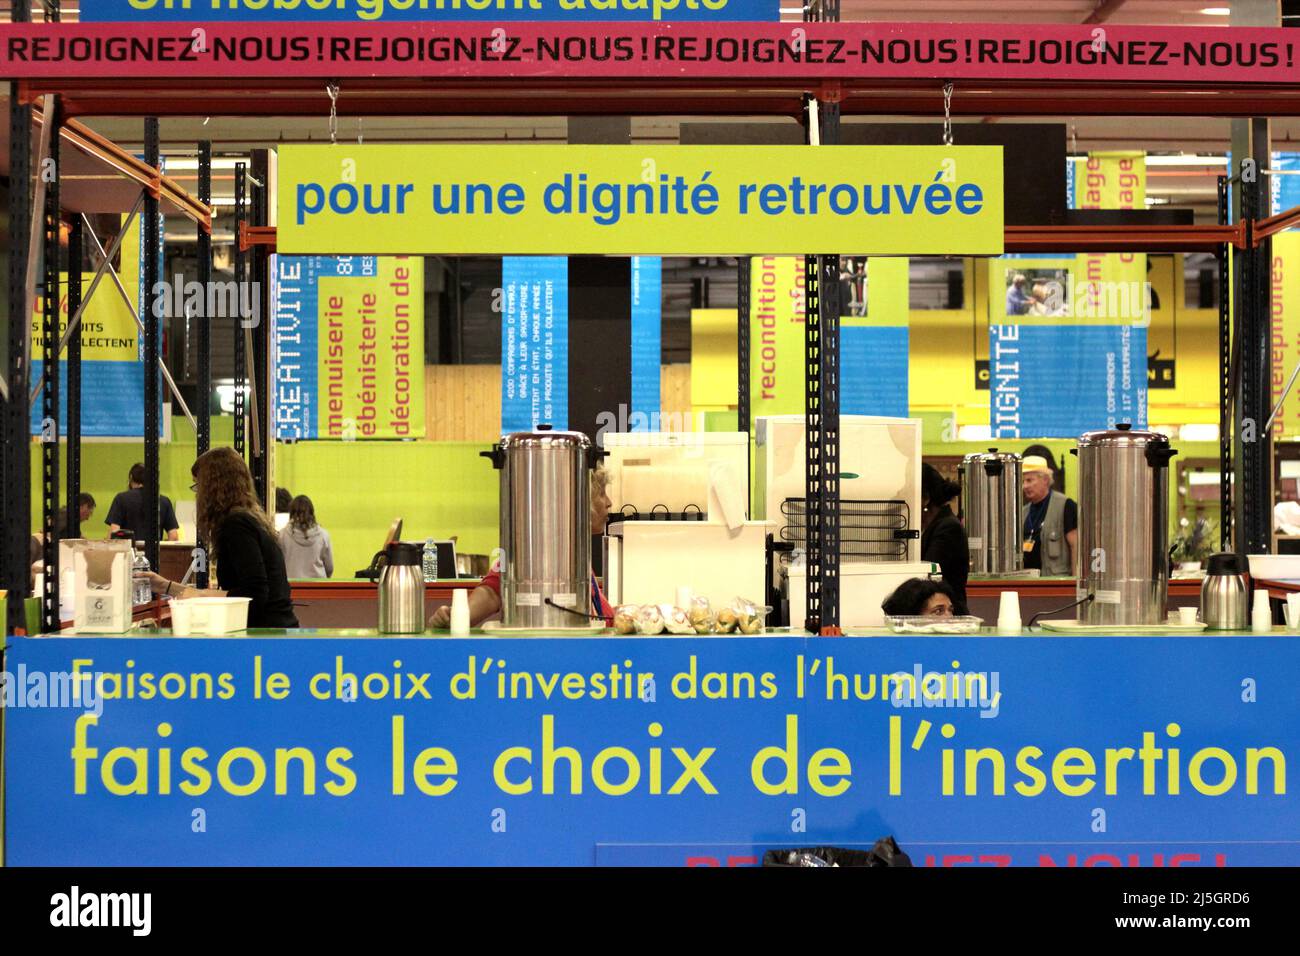 Emmaüs lors son 13e salon Paris Porte de Versailles 23 juin 2012 : stand café et banderoles 'Rejoignez-nous', 'pour une dignité retruvée' Foto Stock